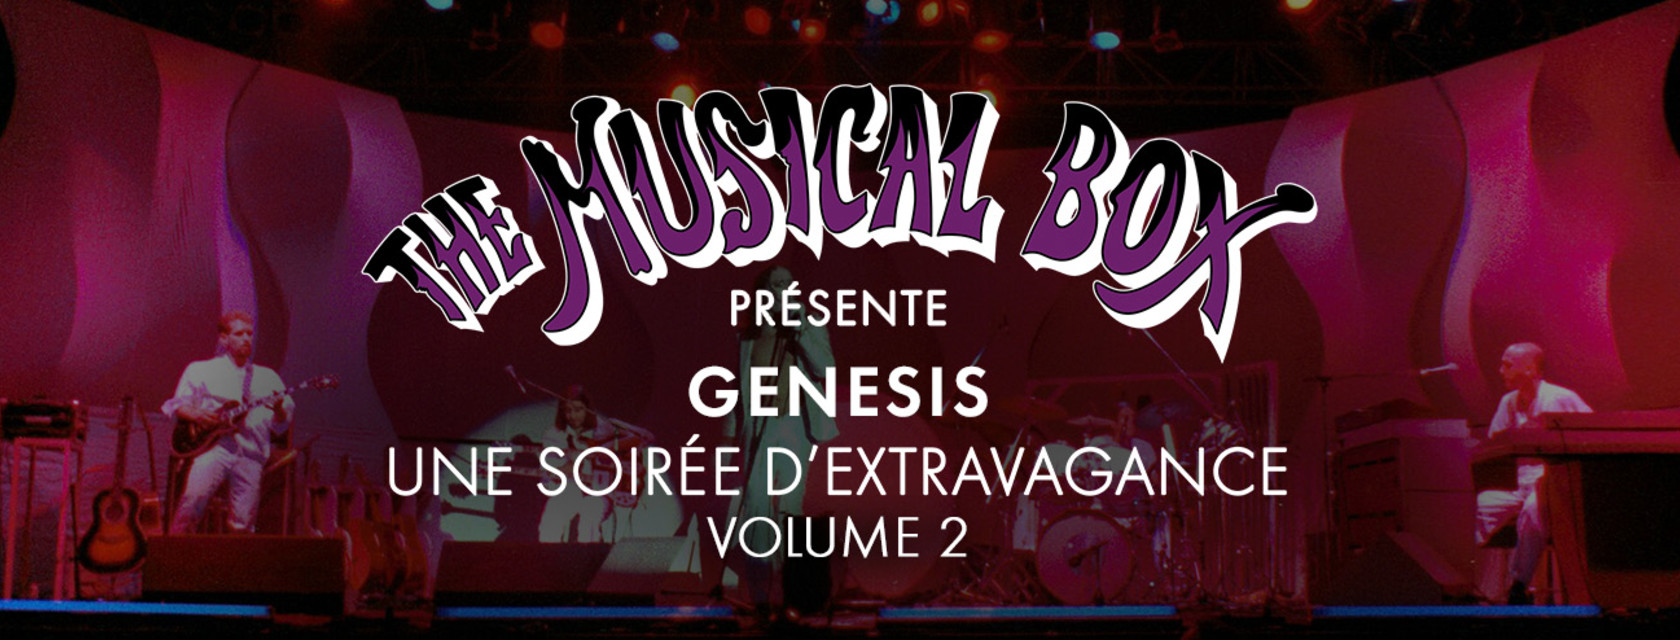 The Musical Box présente GENESIS - Une soirée d'extravagance, volume 2